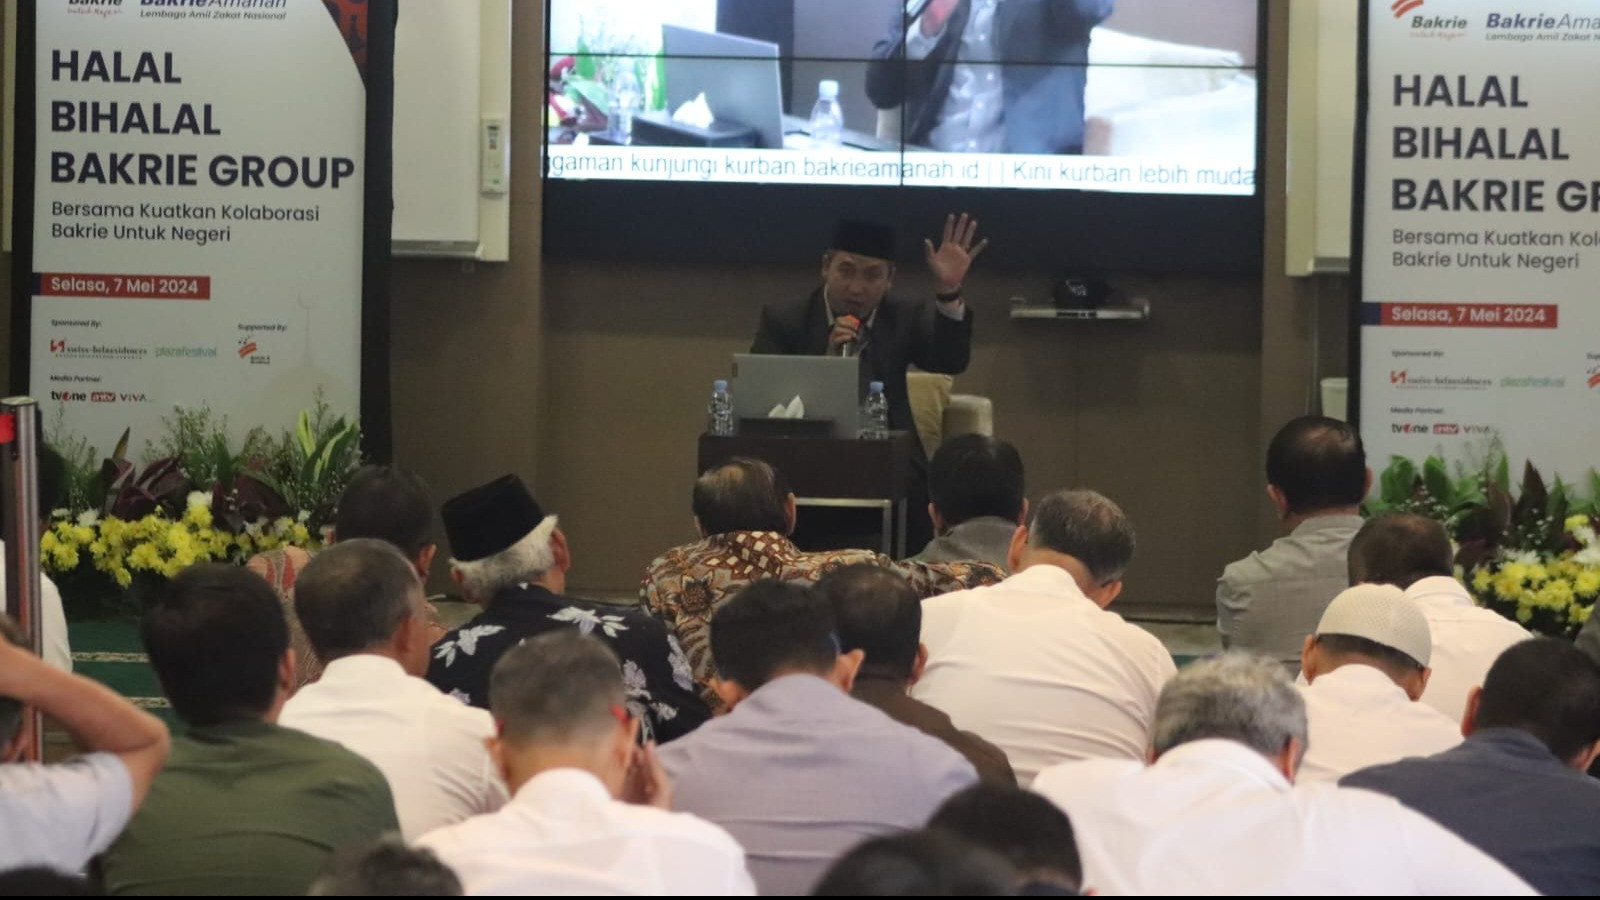 Bakrie Amanah mengadakan acara Halal Bihalal Bakrie Group di Bakrie Tower, Jakarta Selatan, pada Selasa, 7 Mei 2024.